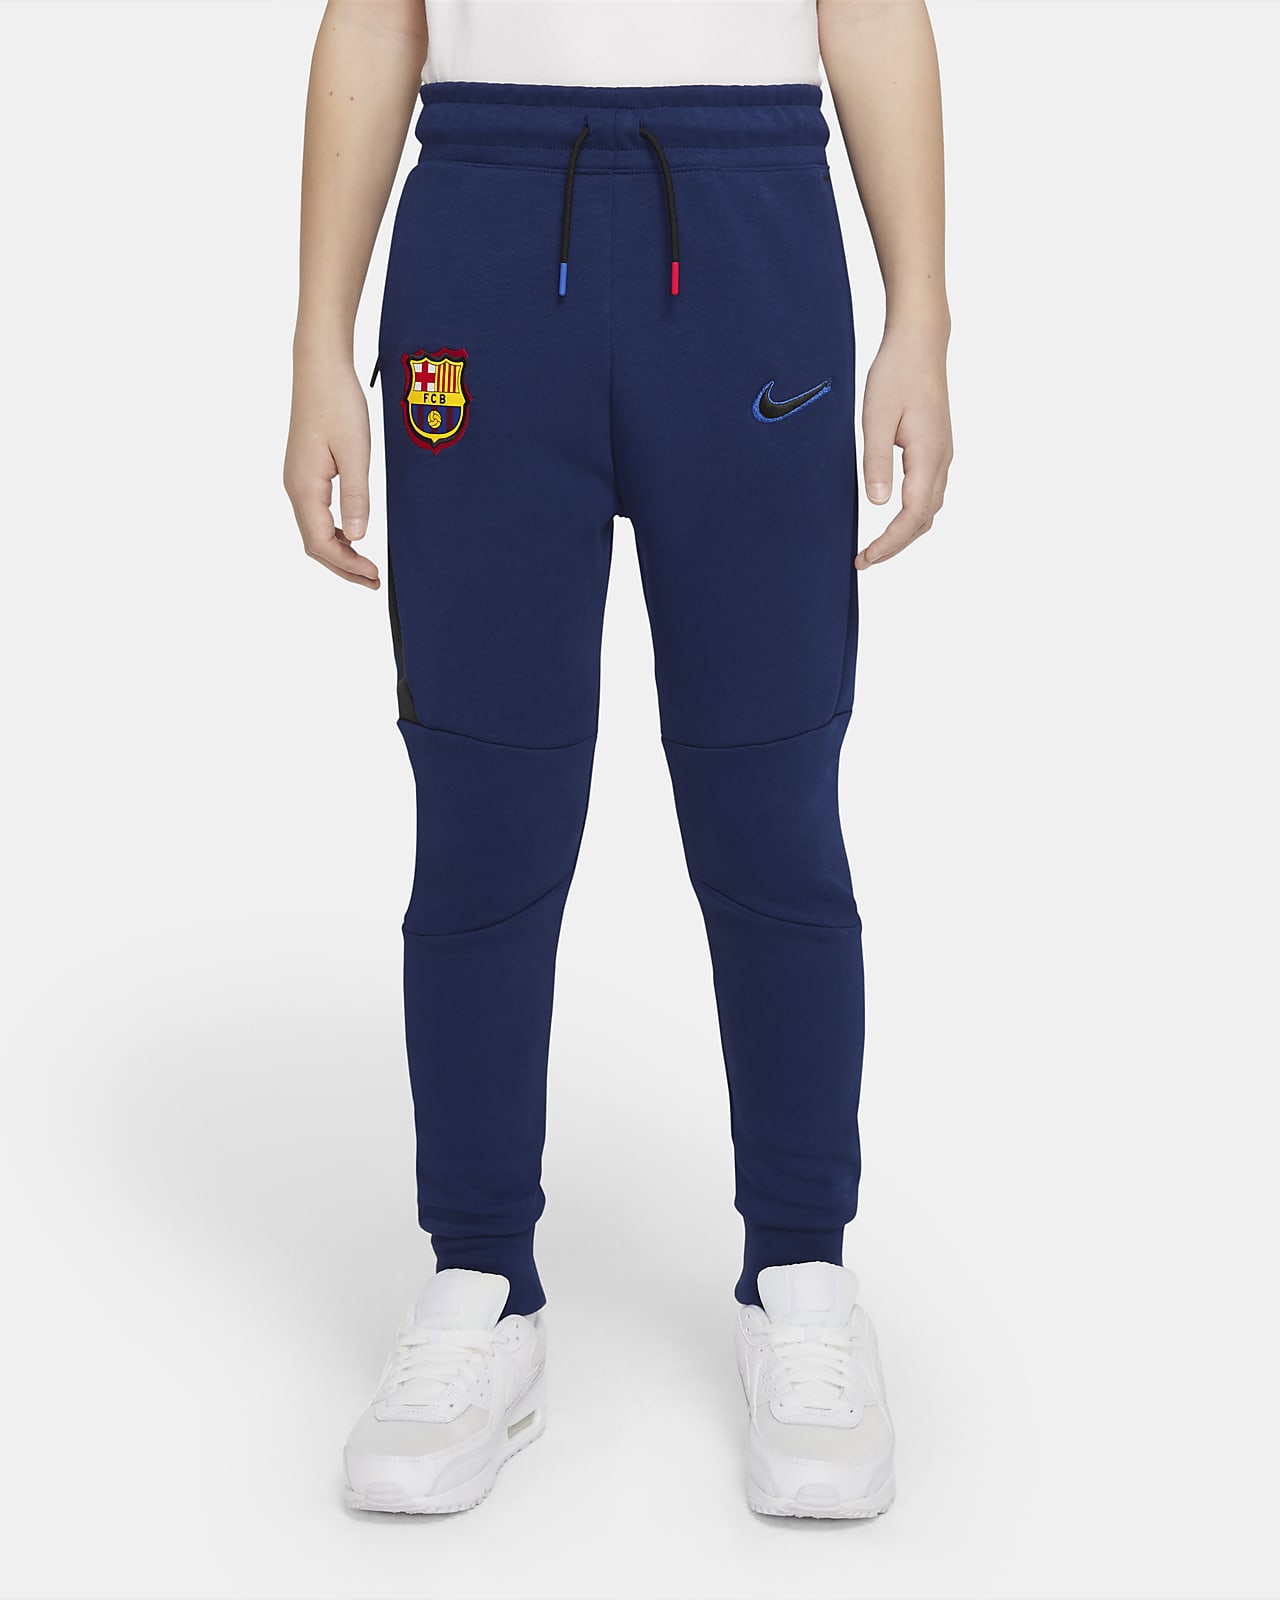 Pantalon FC Barcelona Tech Fleece pour Homme